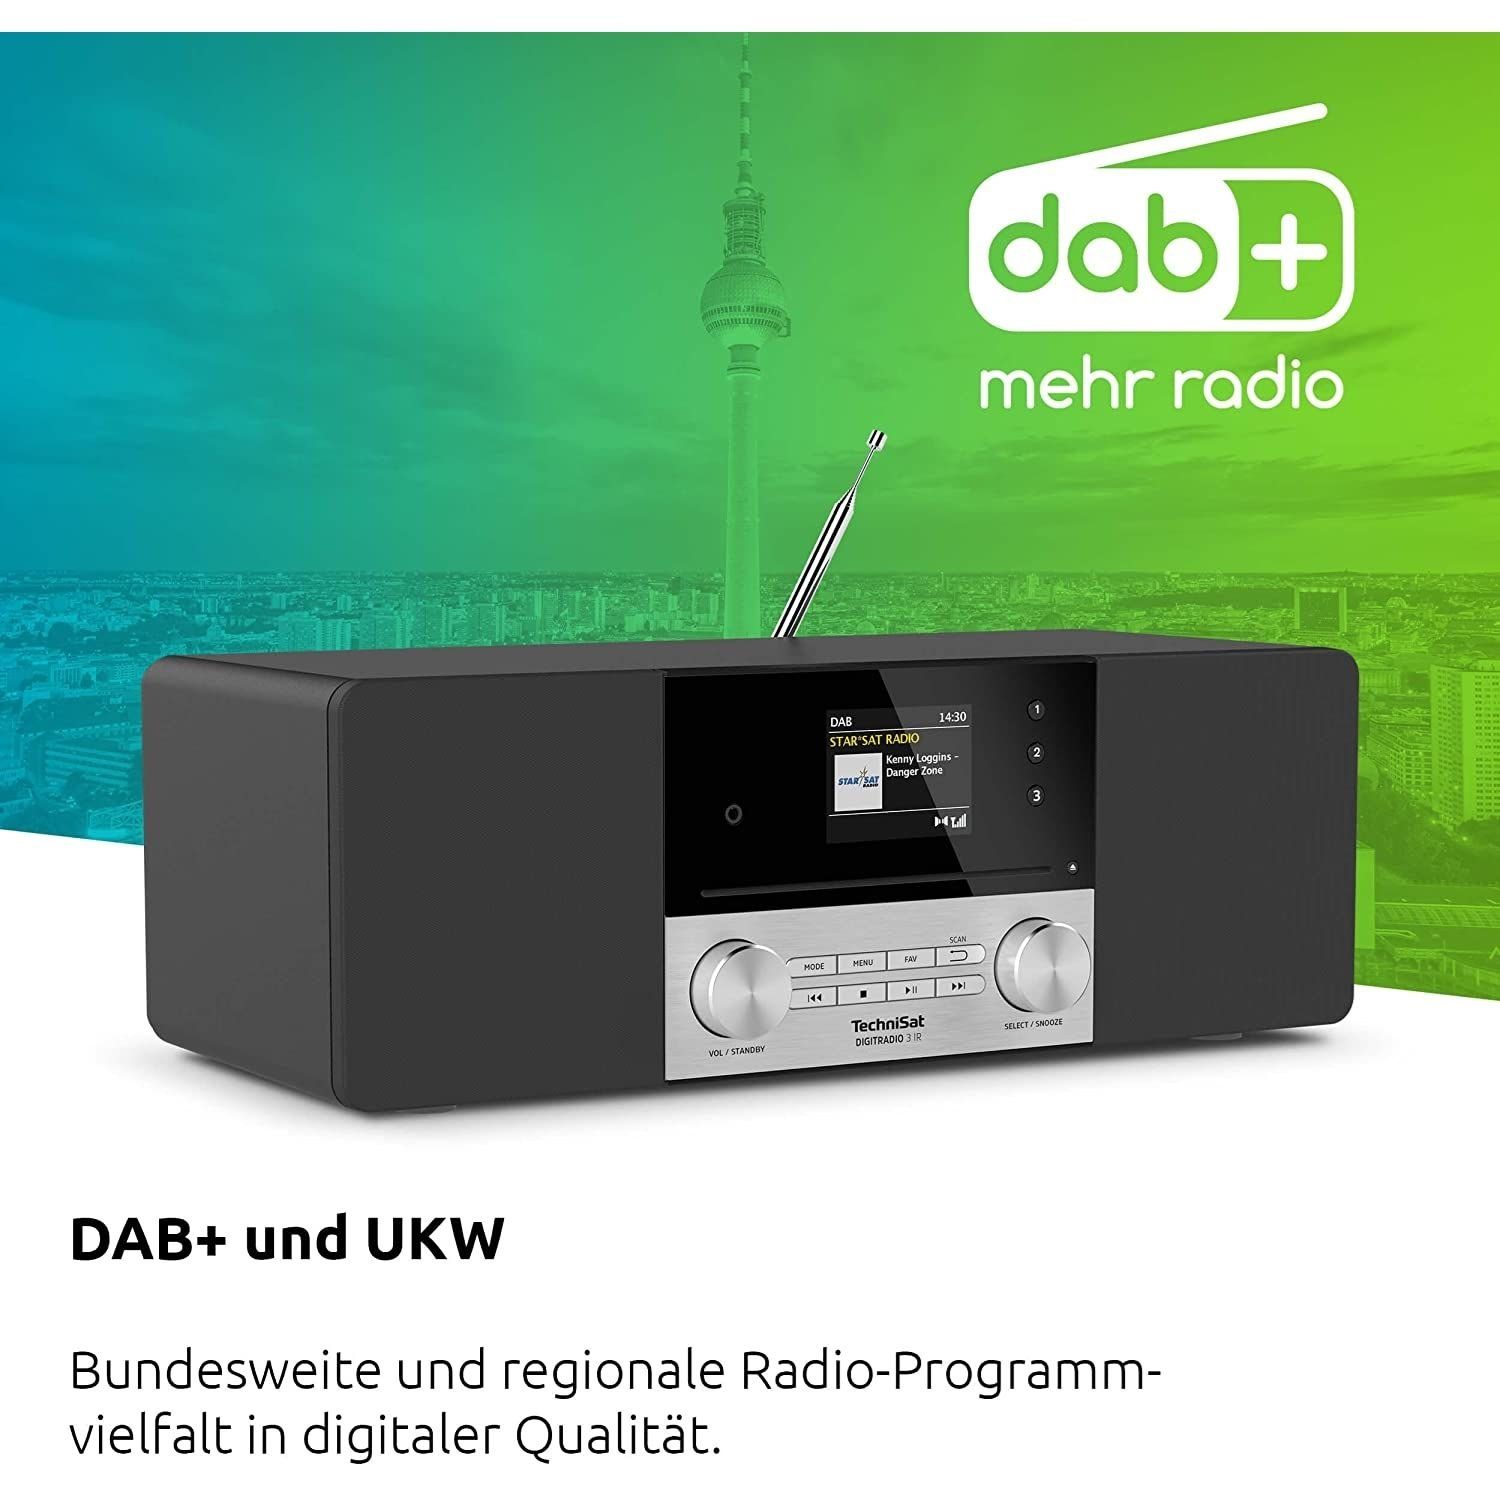 TechniSat DIGITRADIO 3 mit W, und IR Digitalradio DAB+/UKW 20 (DAB) CD-Player und mit und MP3-Wiedergabe) USB-Schnittstelle (DAB+/UKW Internetradio, Internetradio Ladefunktion